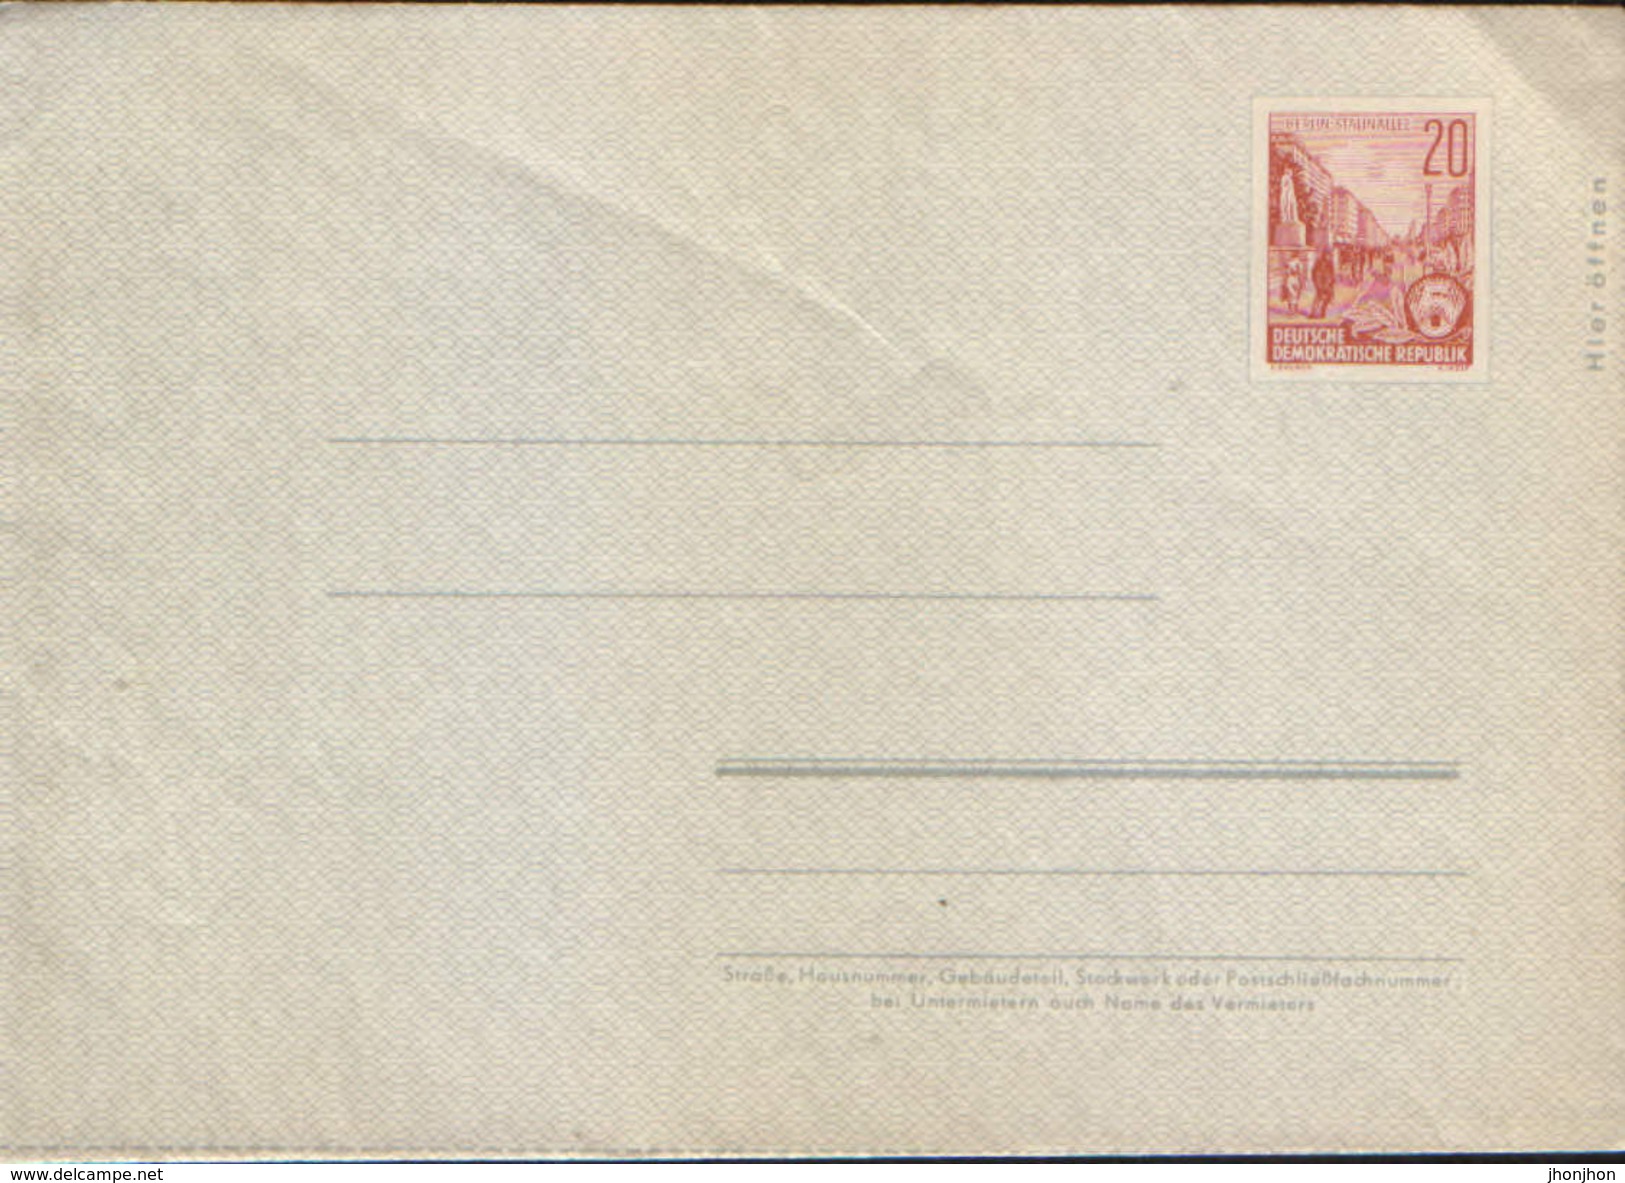 Deutschland/DDR - Postal Stationery Cover Private, Unused - PU 411 - Privatumschläge - Ungebraucht